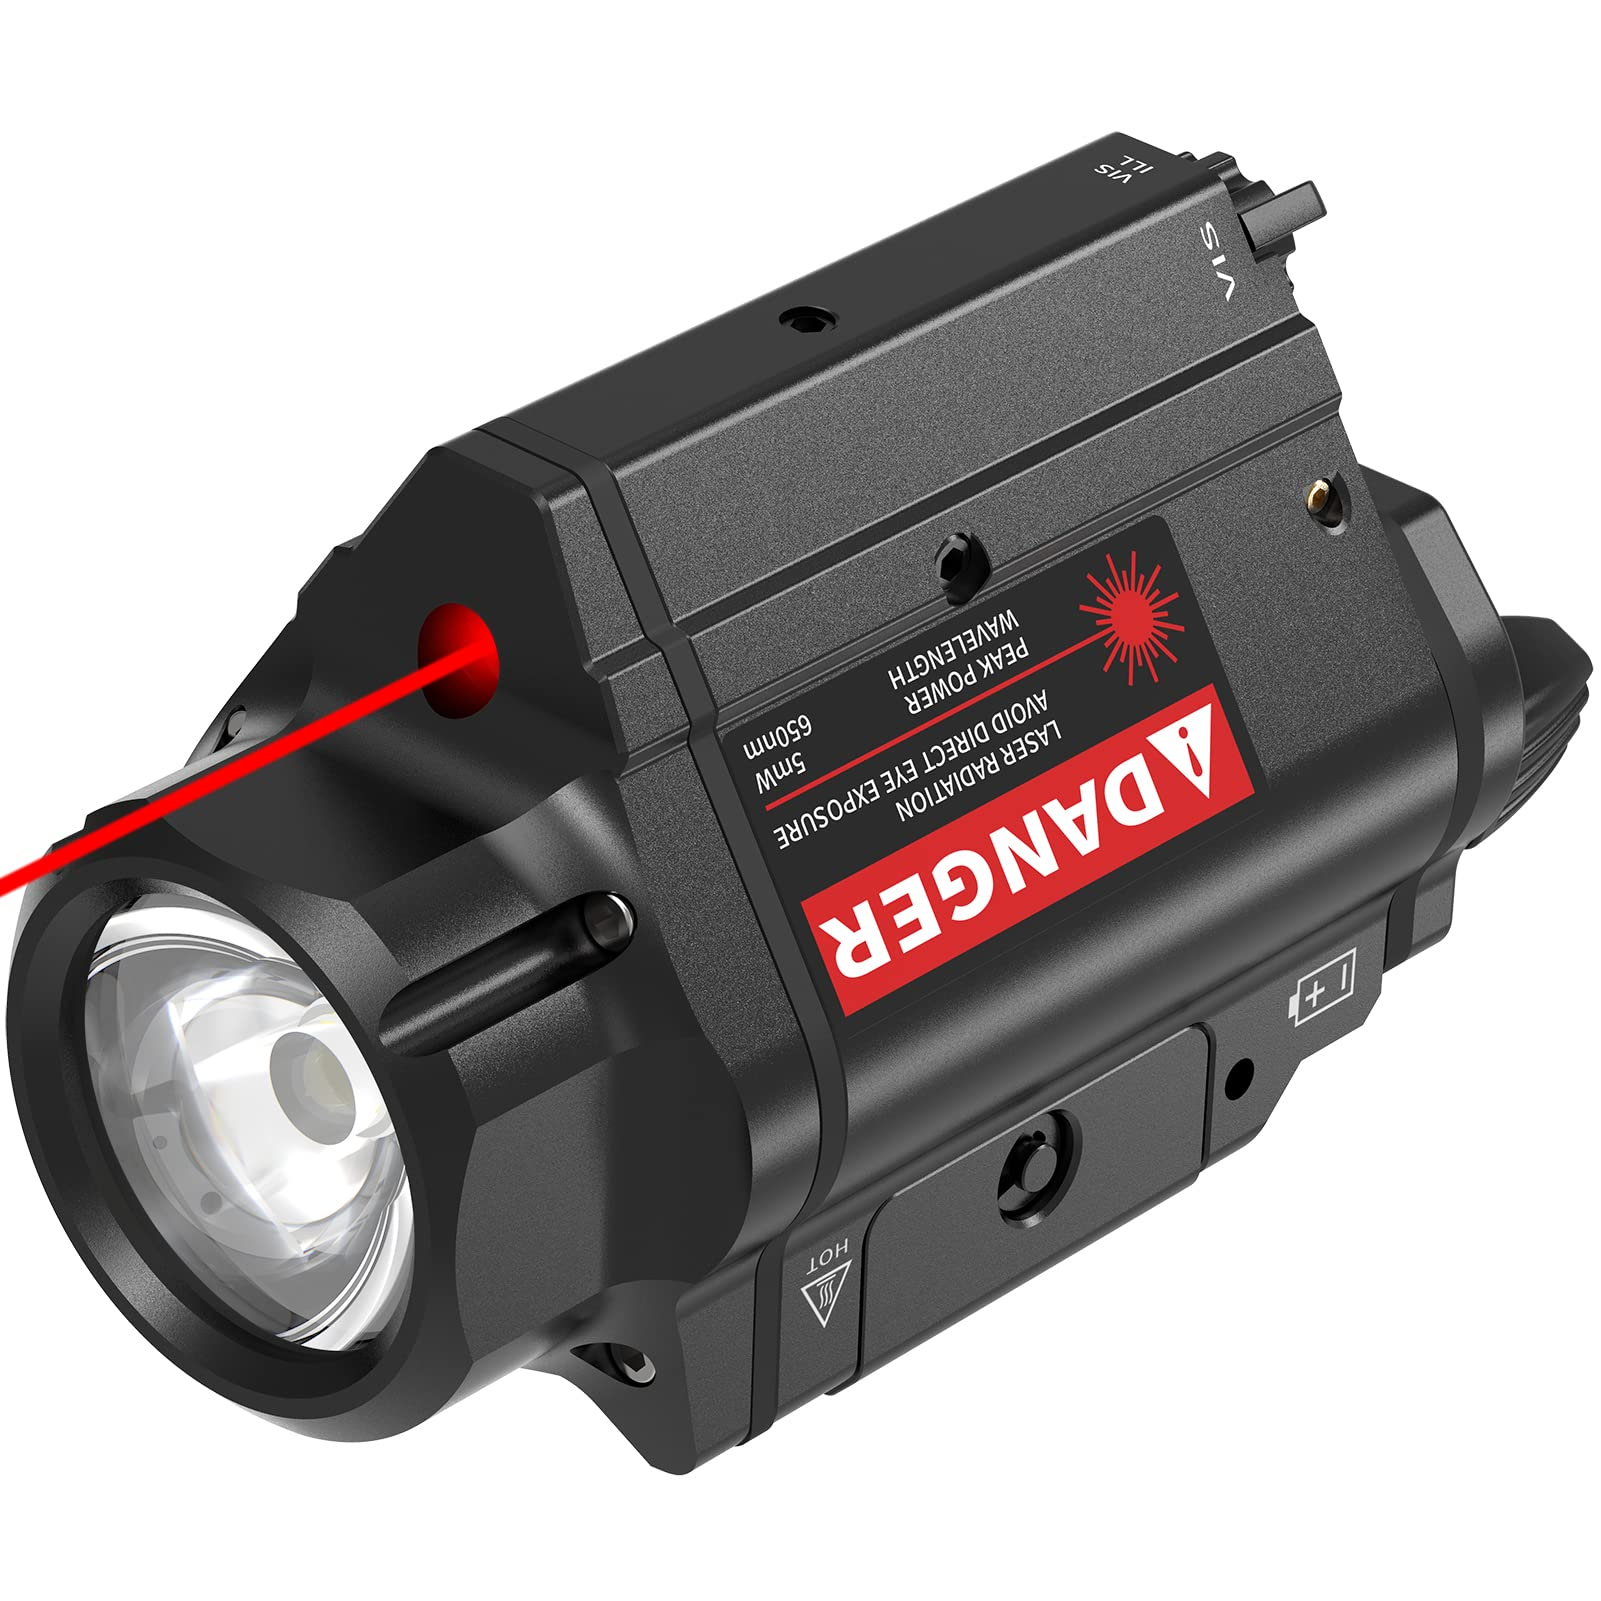 Feerien Rote Laser-Taschenlampen-Kombination, 800 Lumen, Pistolenlaserlicht für 20 mm Picatinny-Schiene, 3 Modi, Taschenlampen, Laservisier